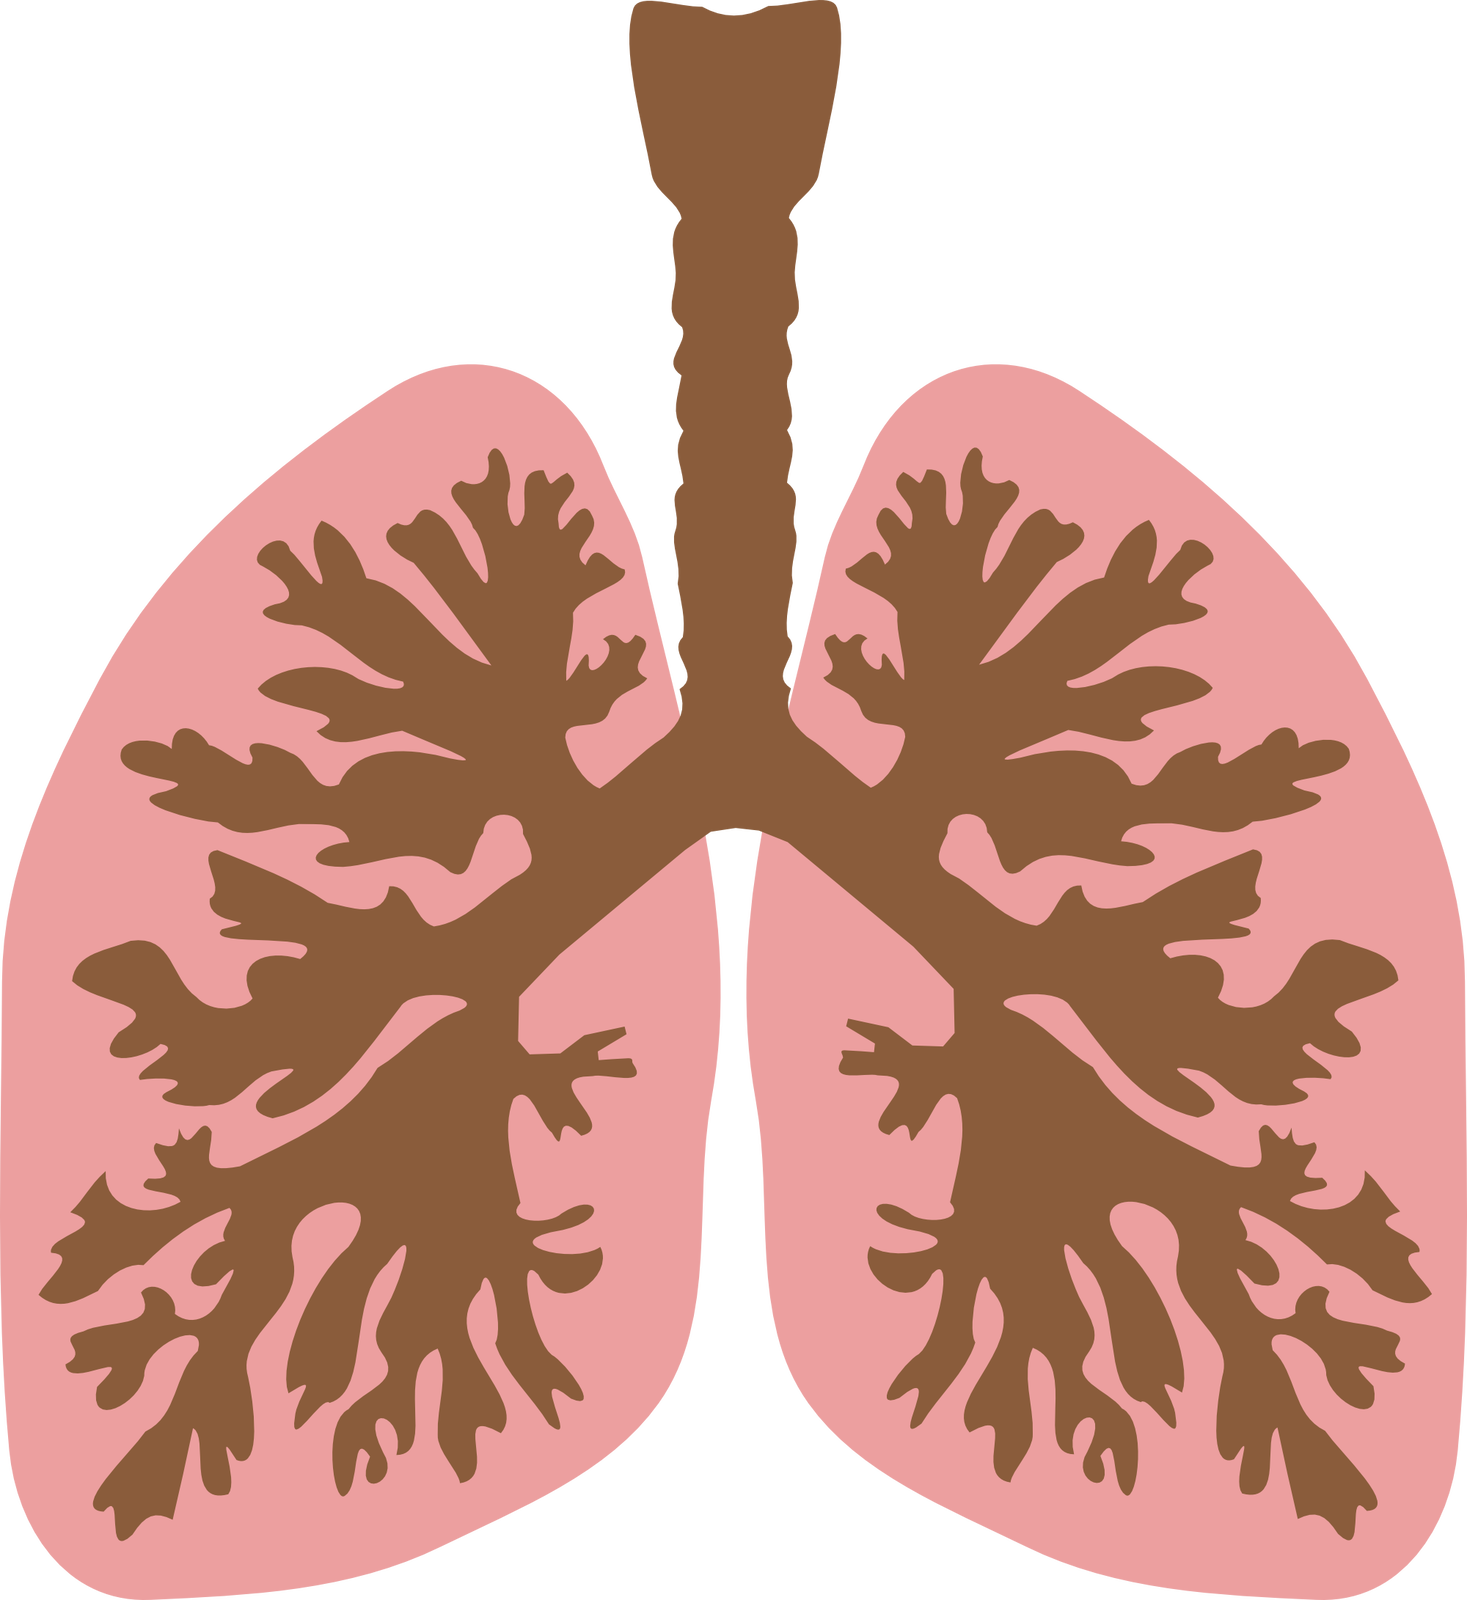 Ilustracja przedstawia dwa płaty płuca. Mają podłużny, owalny kształt. Są wypełnione licznymi rozgałęzieniami - to oskrzela. 